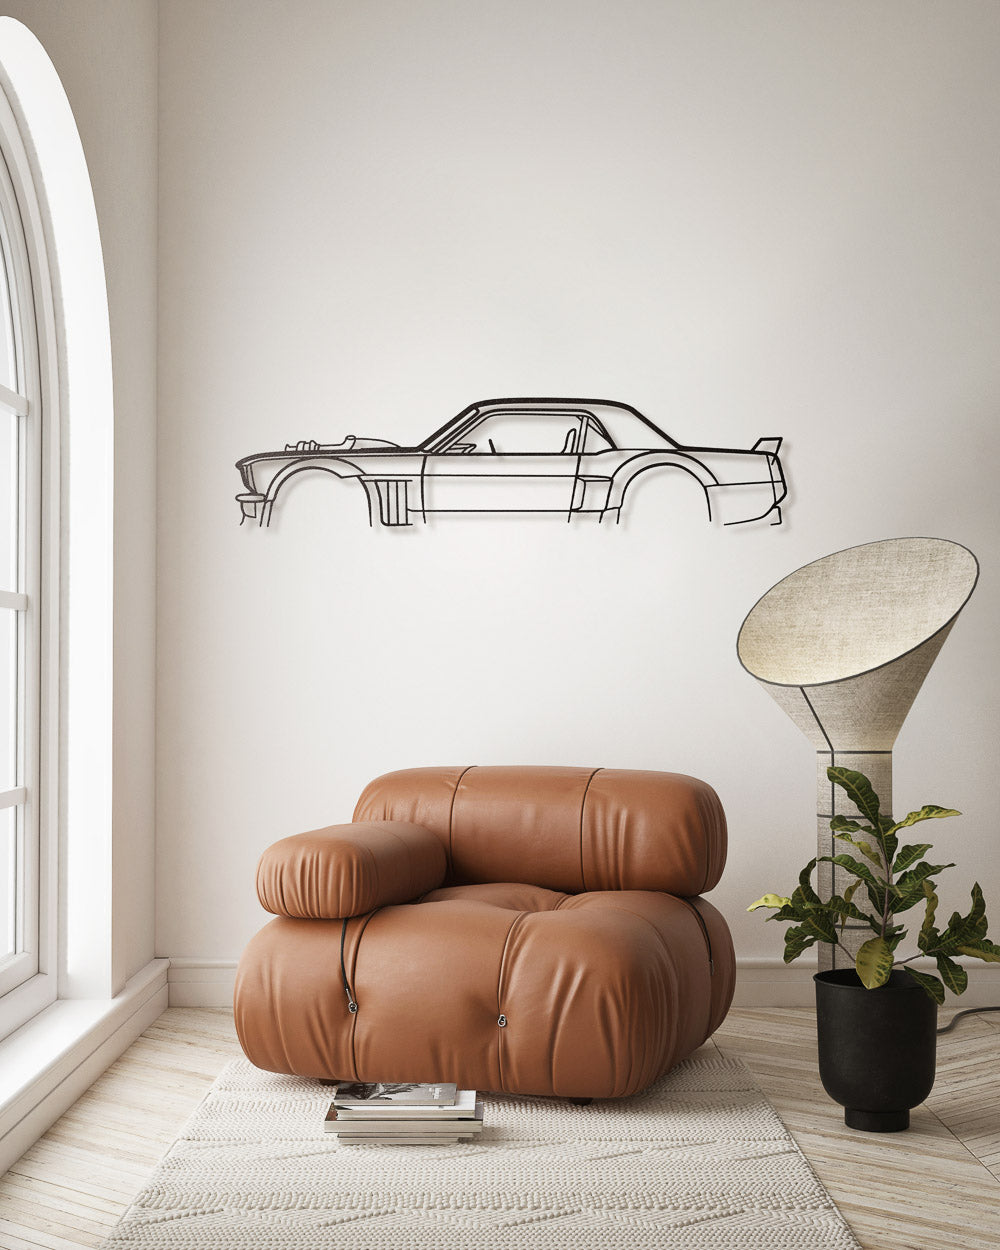 Nos - Ford Mustang 1400hp - Sagoma in Metallo di Design